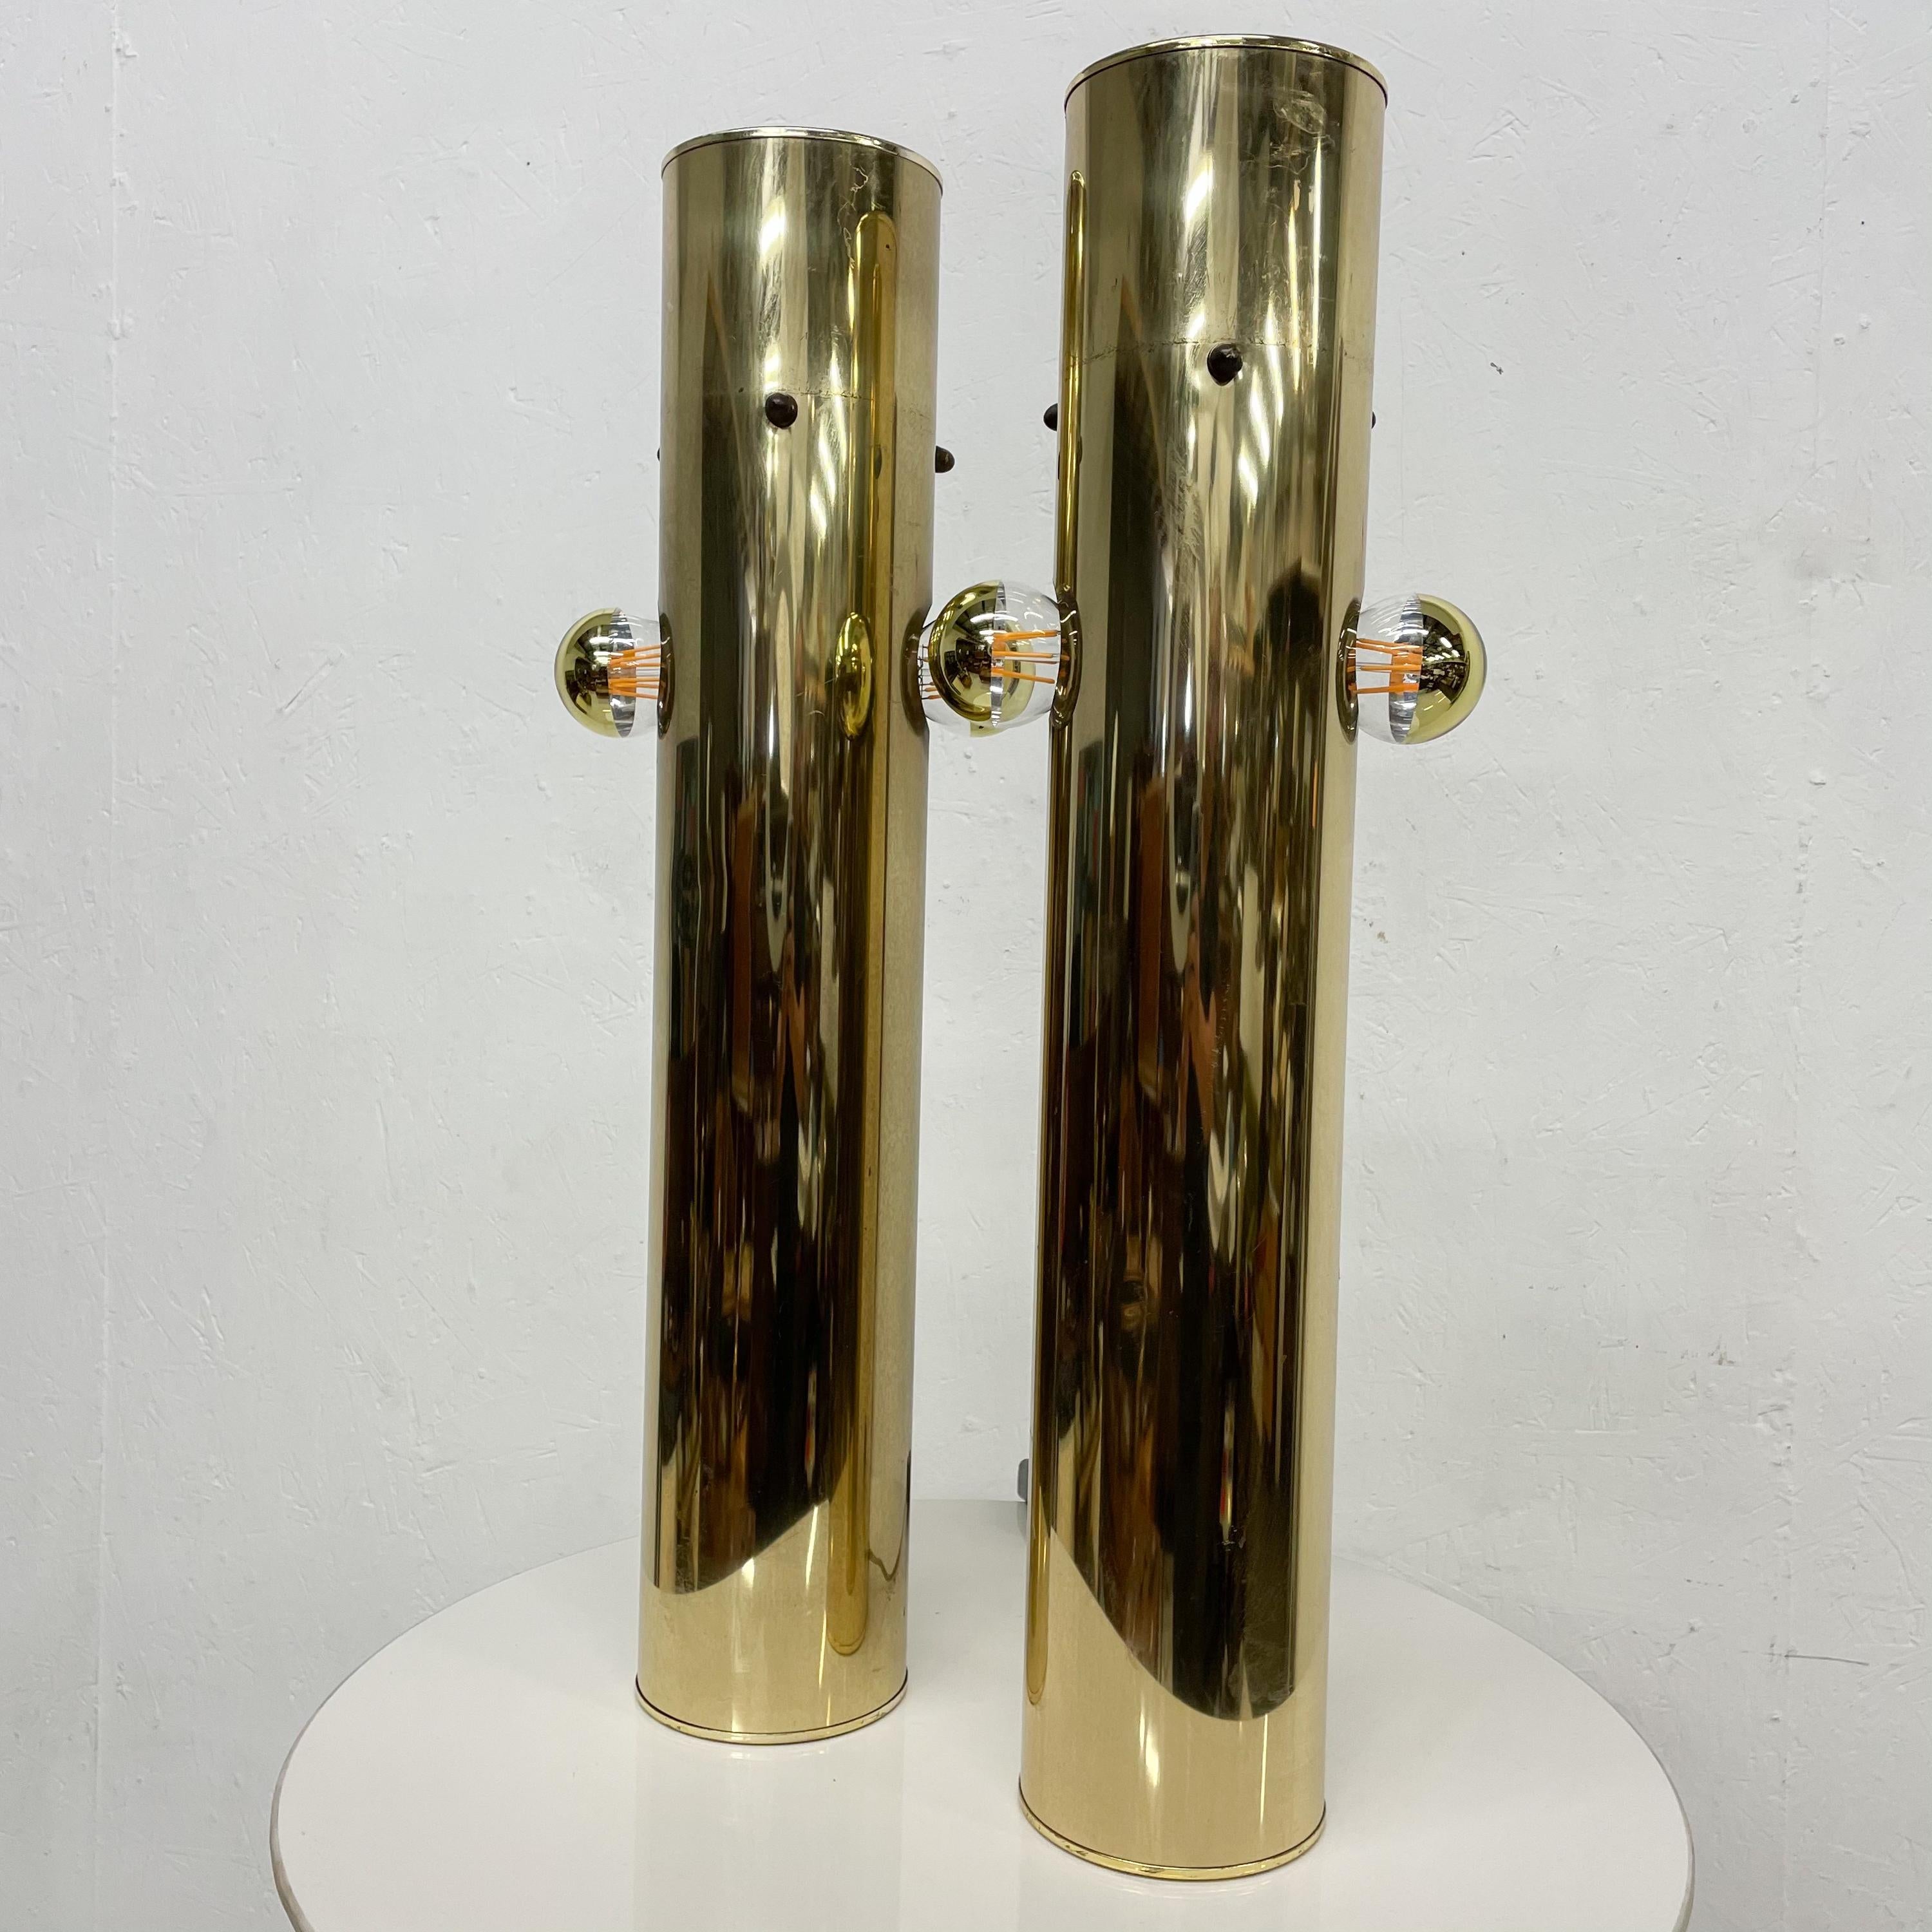 1970er Jahre Moderne Messing Zylinder Tischlampe Paar Pop Art Skulpturale Stil von Robert Sonneman.
Keine Überprüfung vorhanden.
Mit neuer Verkabelung und Dimmer. Enthält zwei Glühbirnen.
Original Preowned Vintage Unrestaurierter Zustand. 
Schrammen